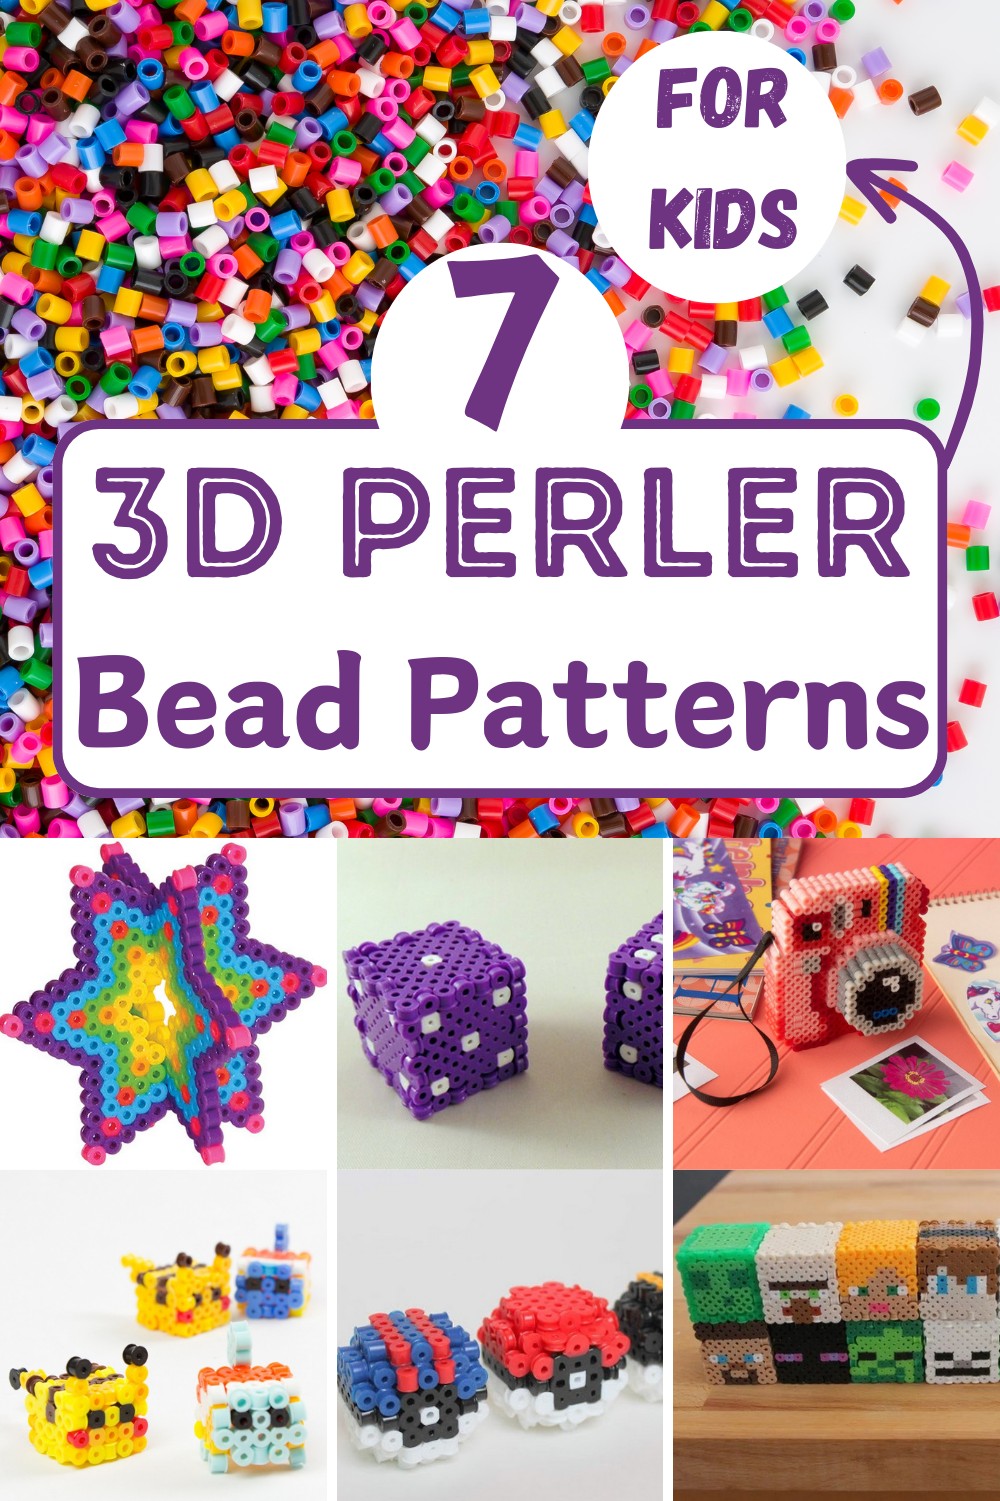 3D Perler Bead Patterns